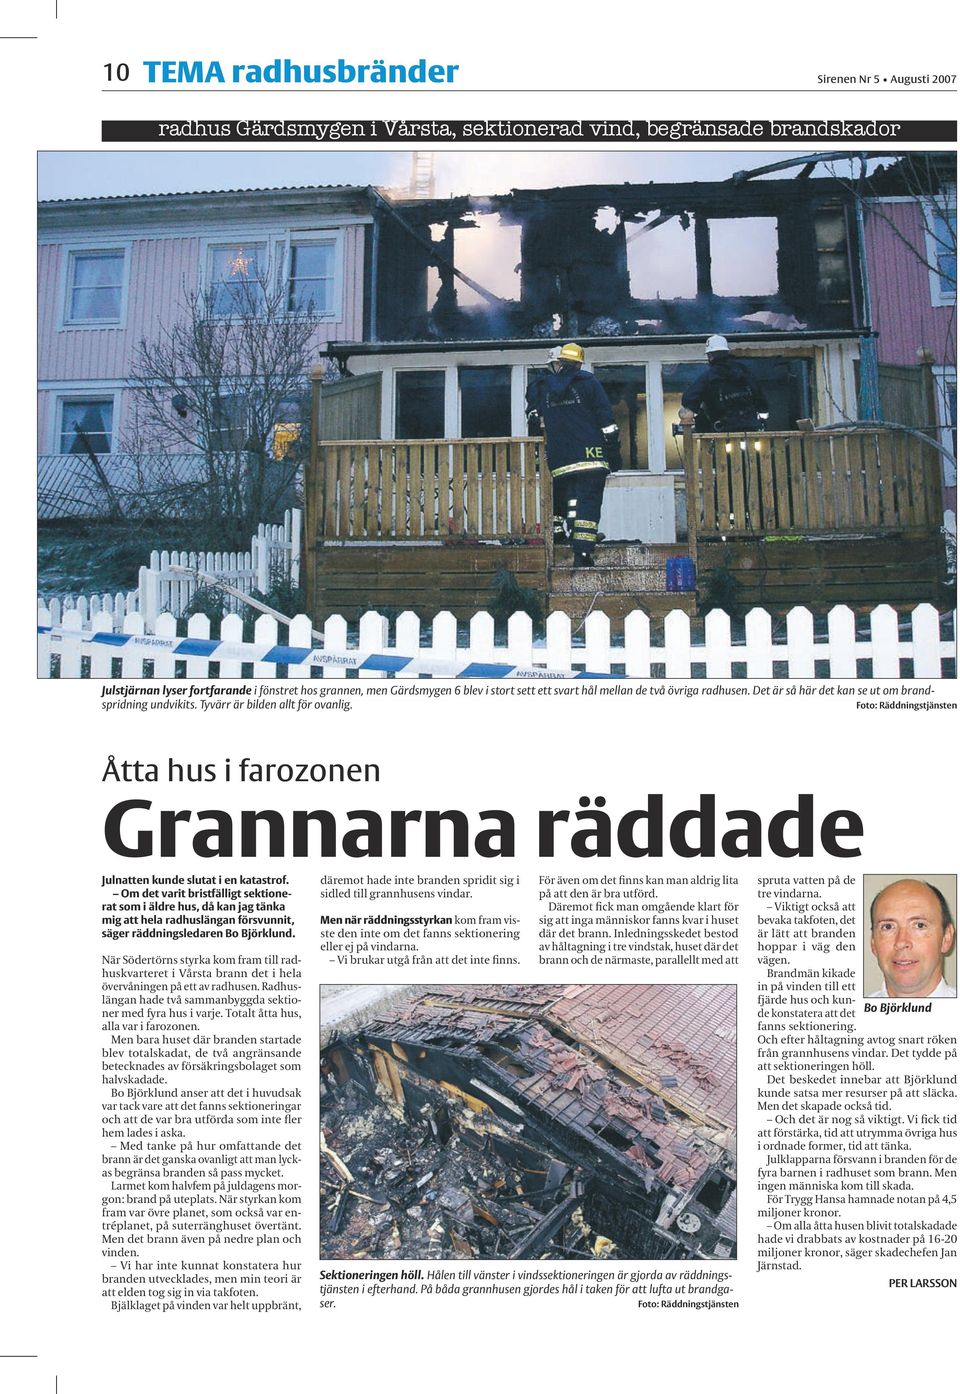 Foto: Räddningstjänsten Åtta hus i farozonen Grannarna räddade Julnatten kunde slutat i en katastrof.